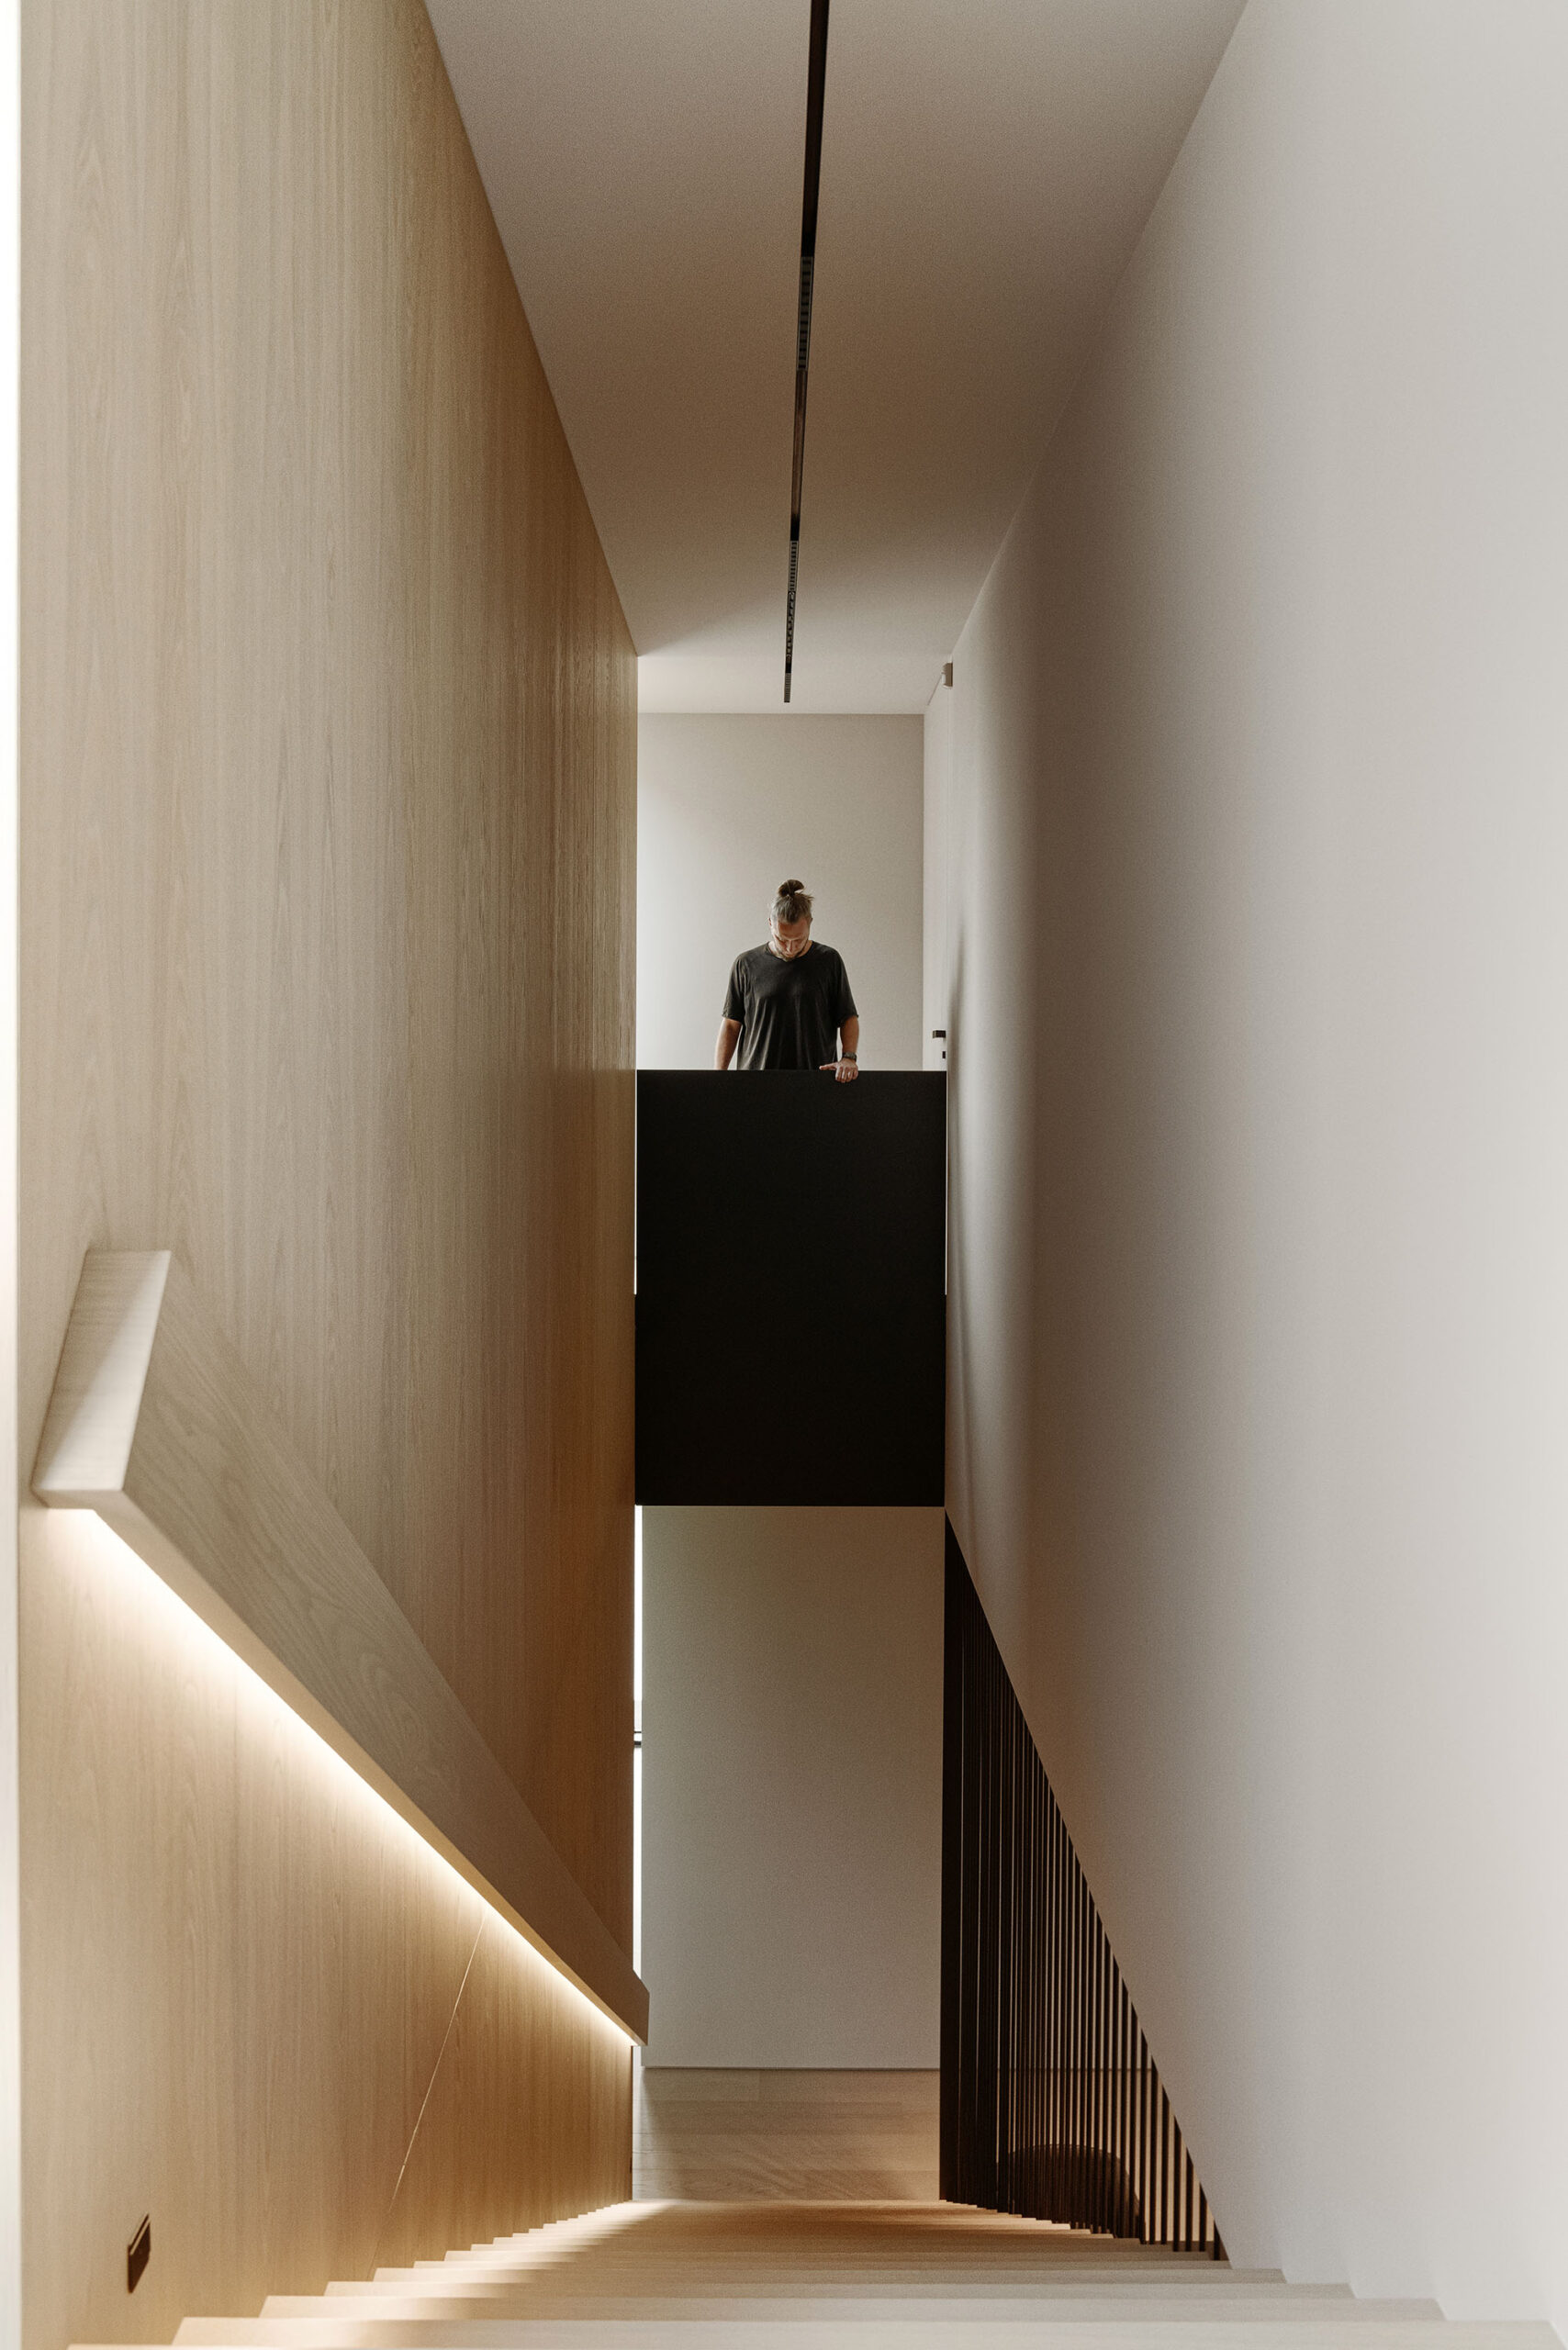 I221_radom_2_interior_contemporaryhouse_interiordesign_polisharchitects_kuoo_tamizo_-21